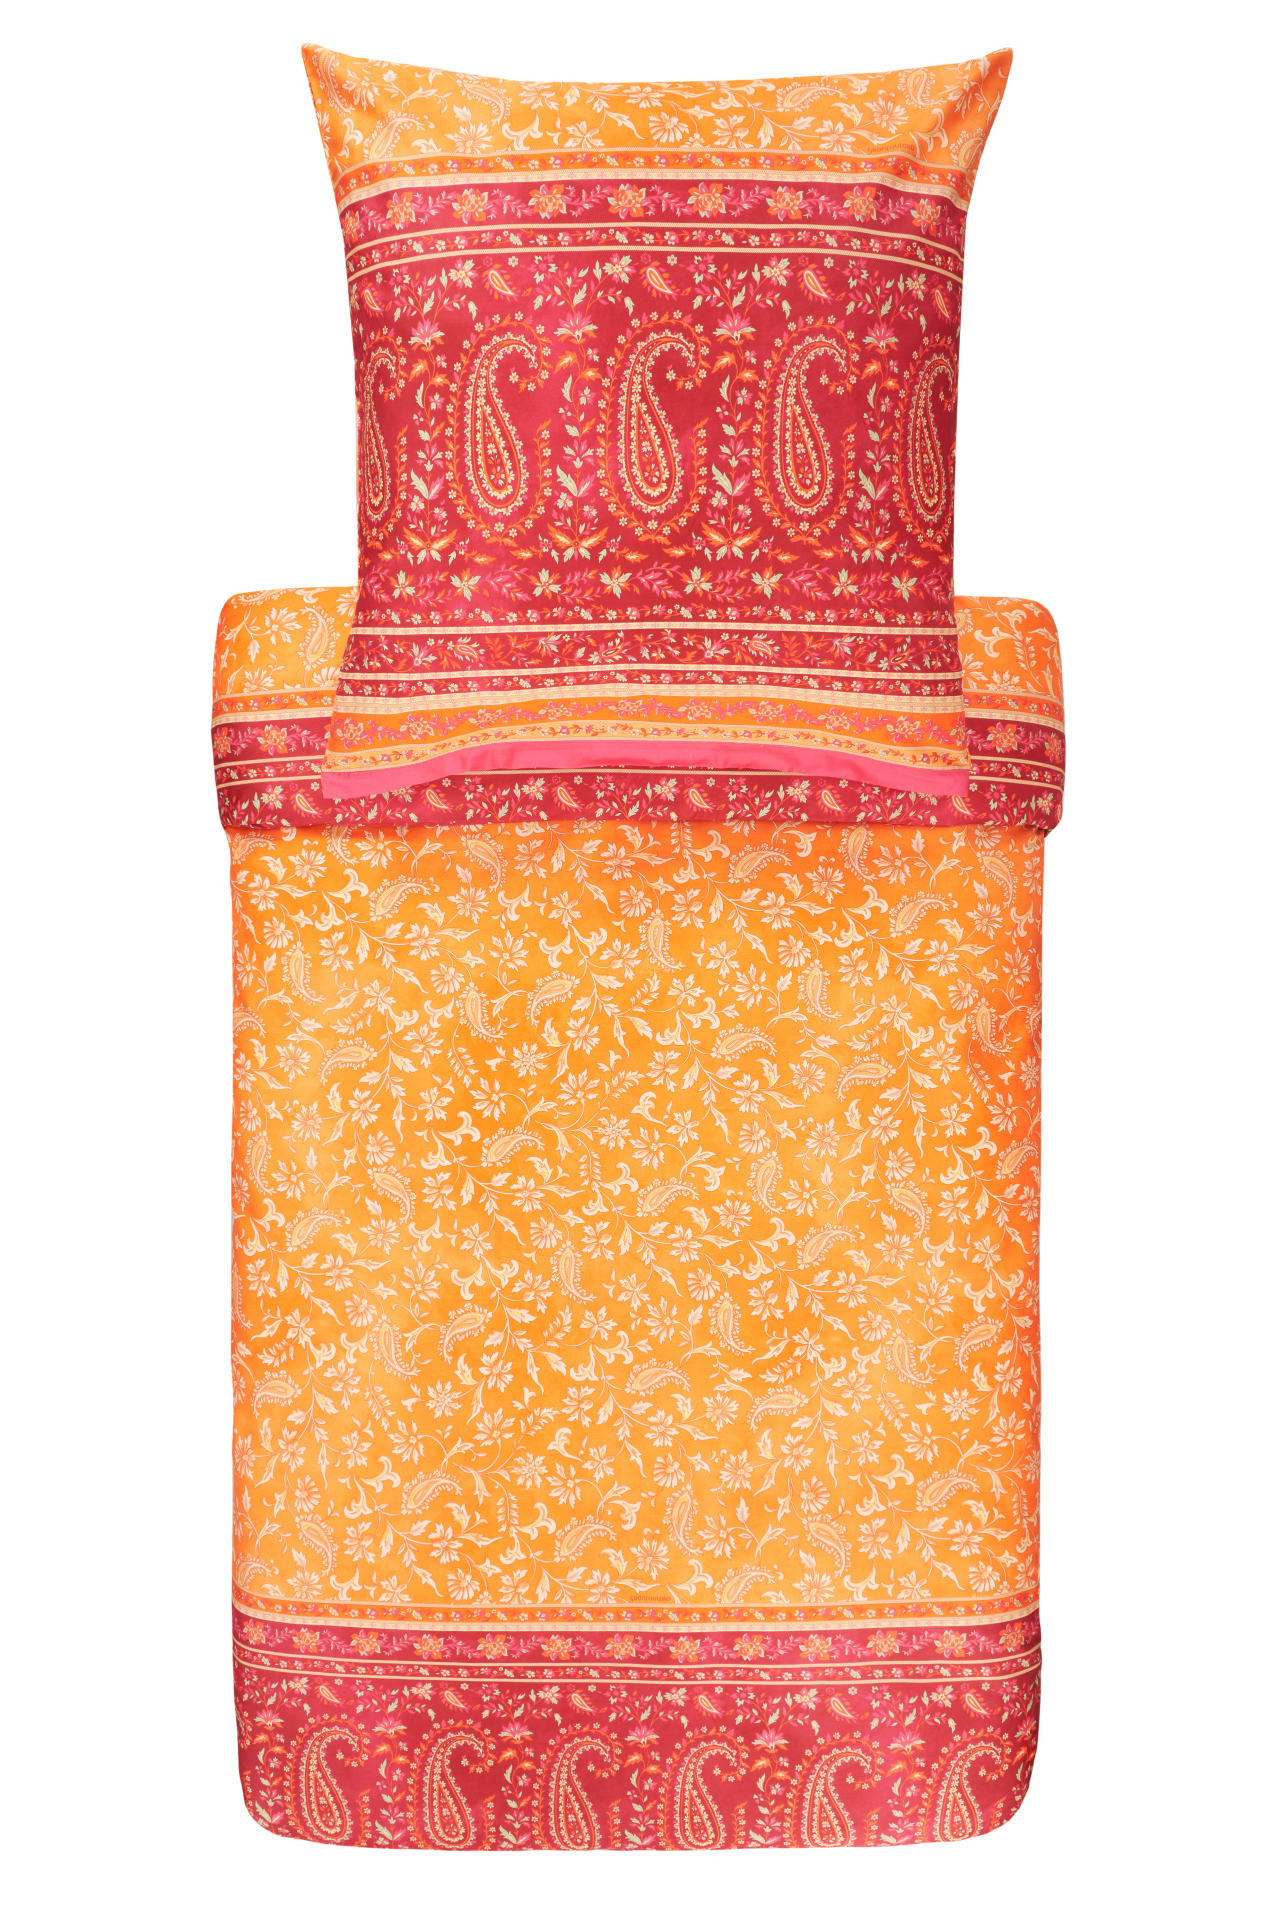 BETTWÄSCHE COMO  - Orange, LIFESTYLE, Textil (135/200cm) - Bassetti